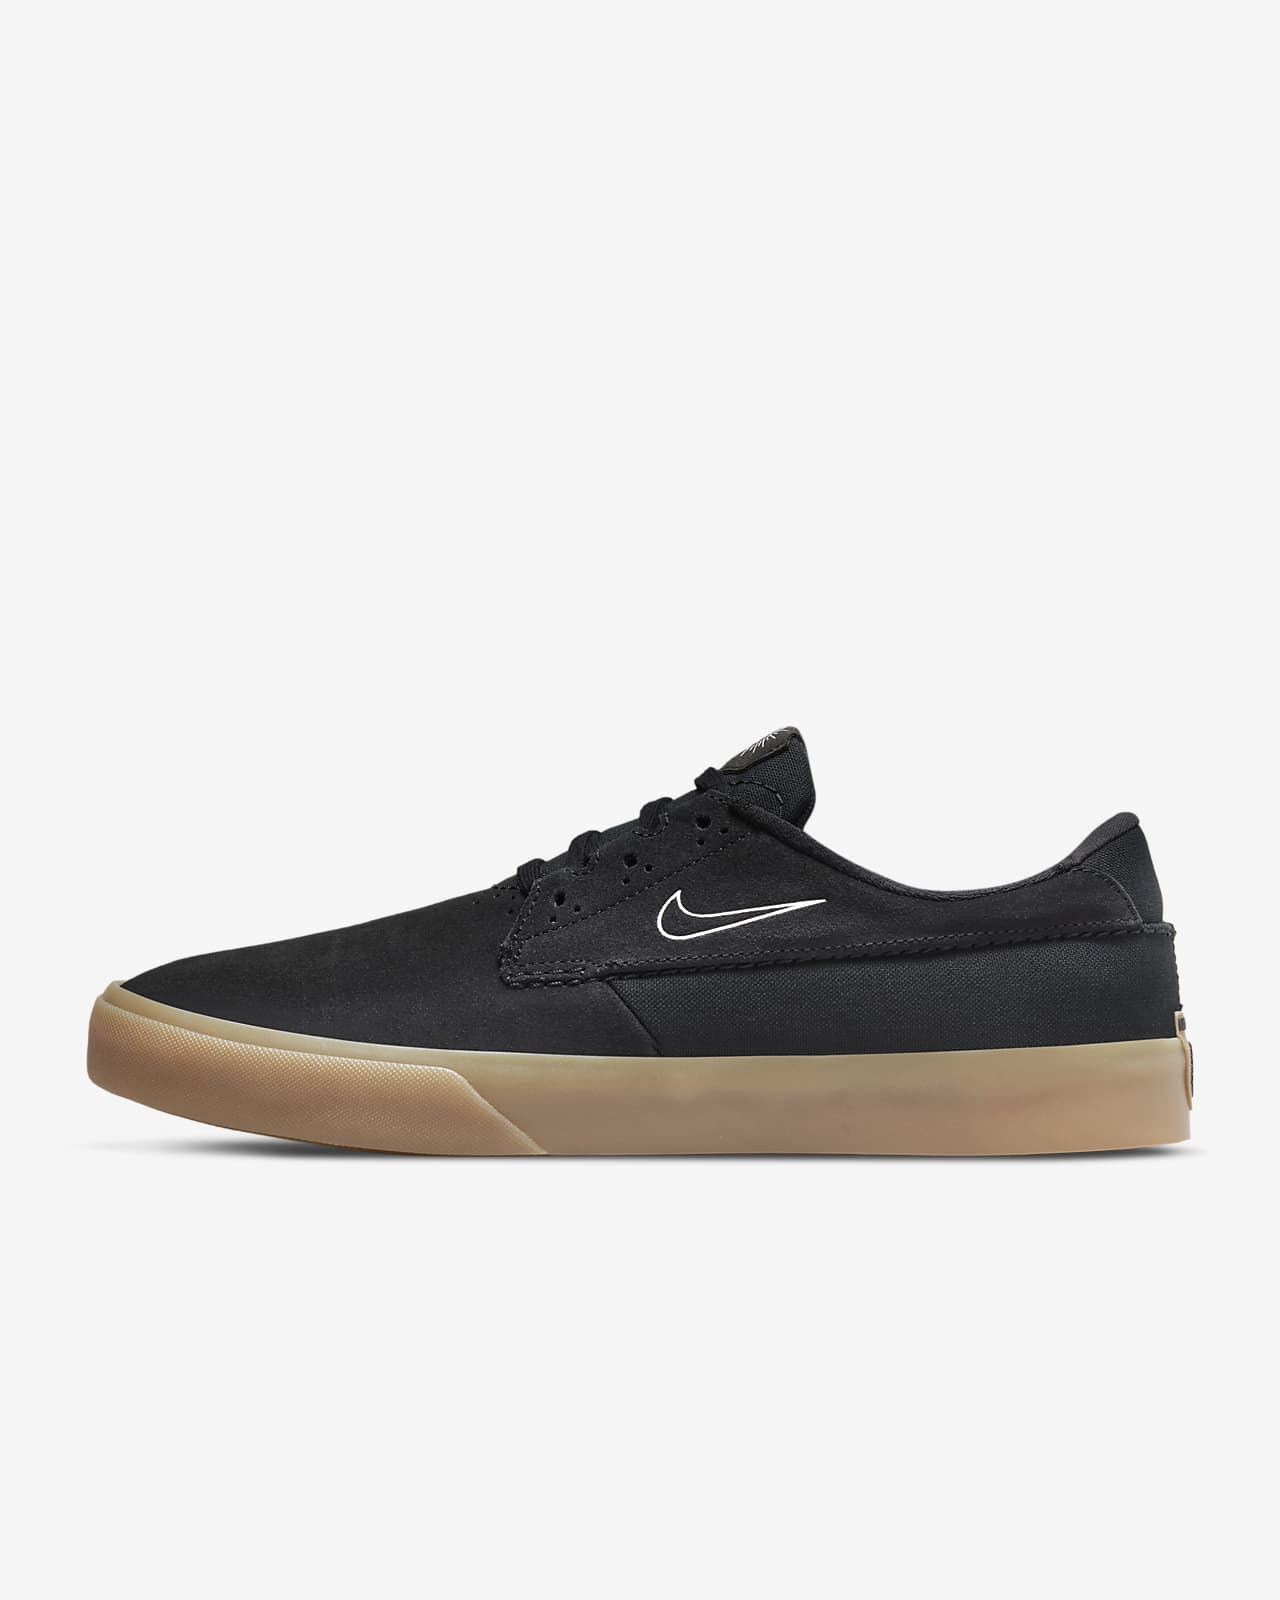 Nike SB Skate Shoes. ID